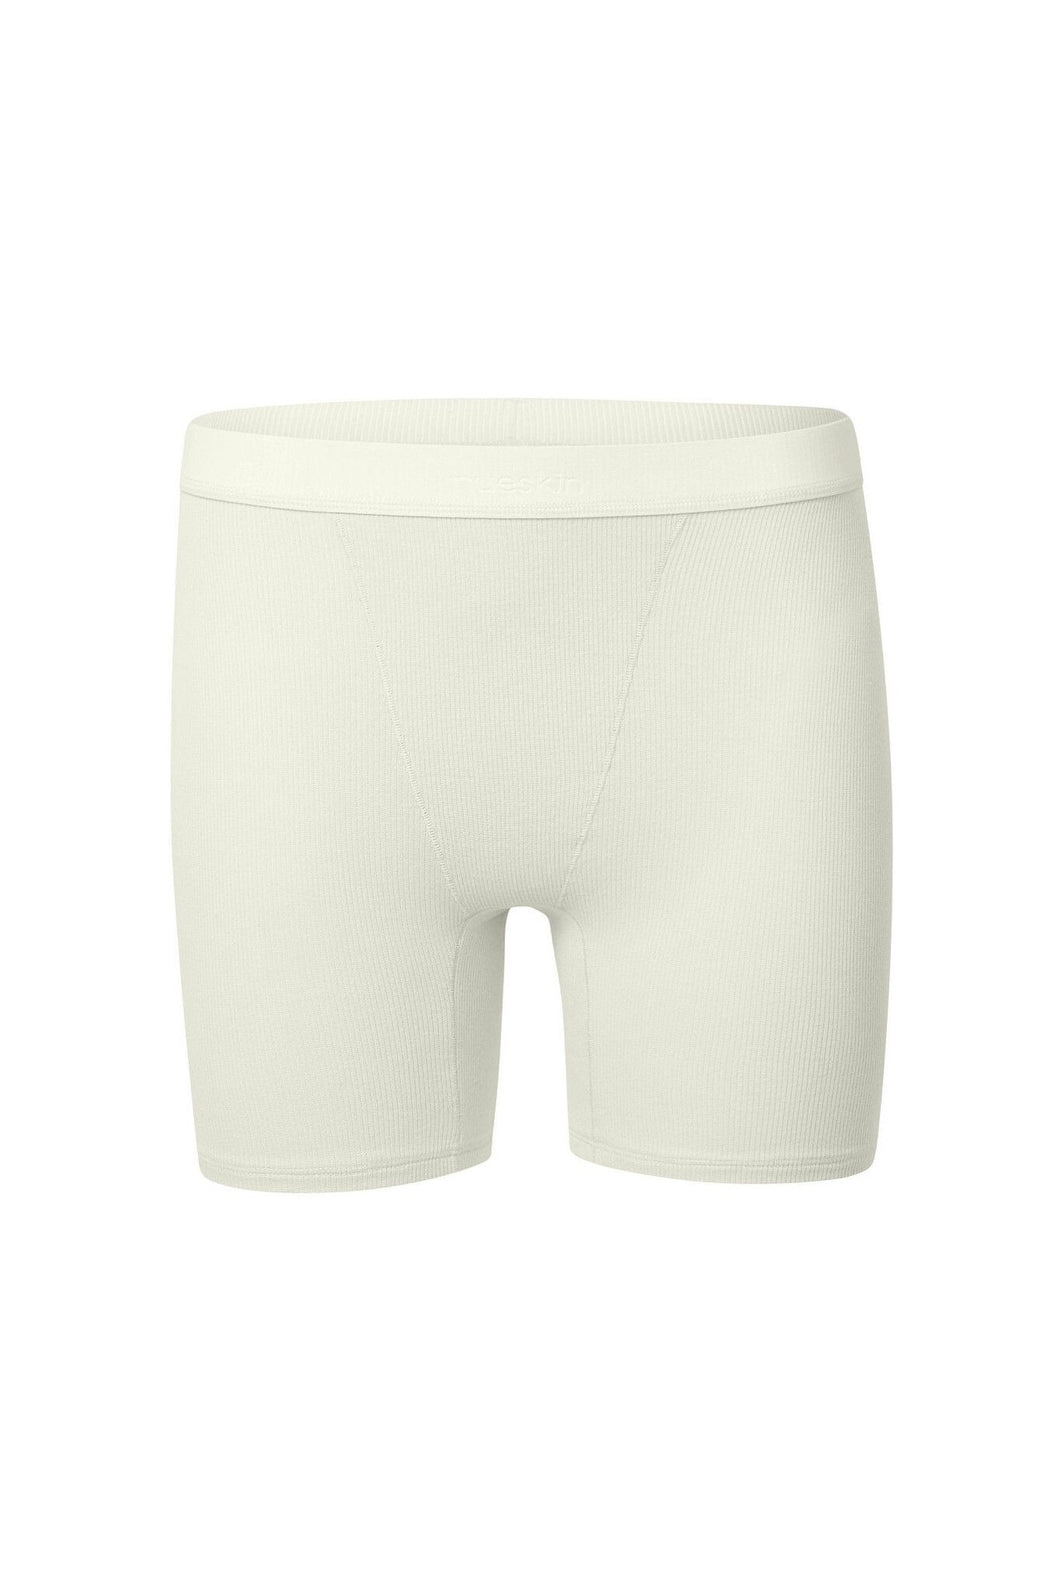 nueskin Hena Rib Cotton Shorts in color Cannoli Cream (Cannoli Cream) and shape shortie